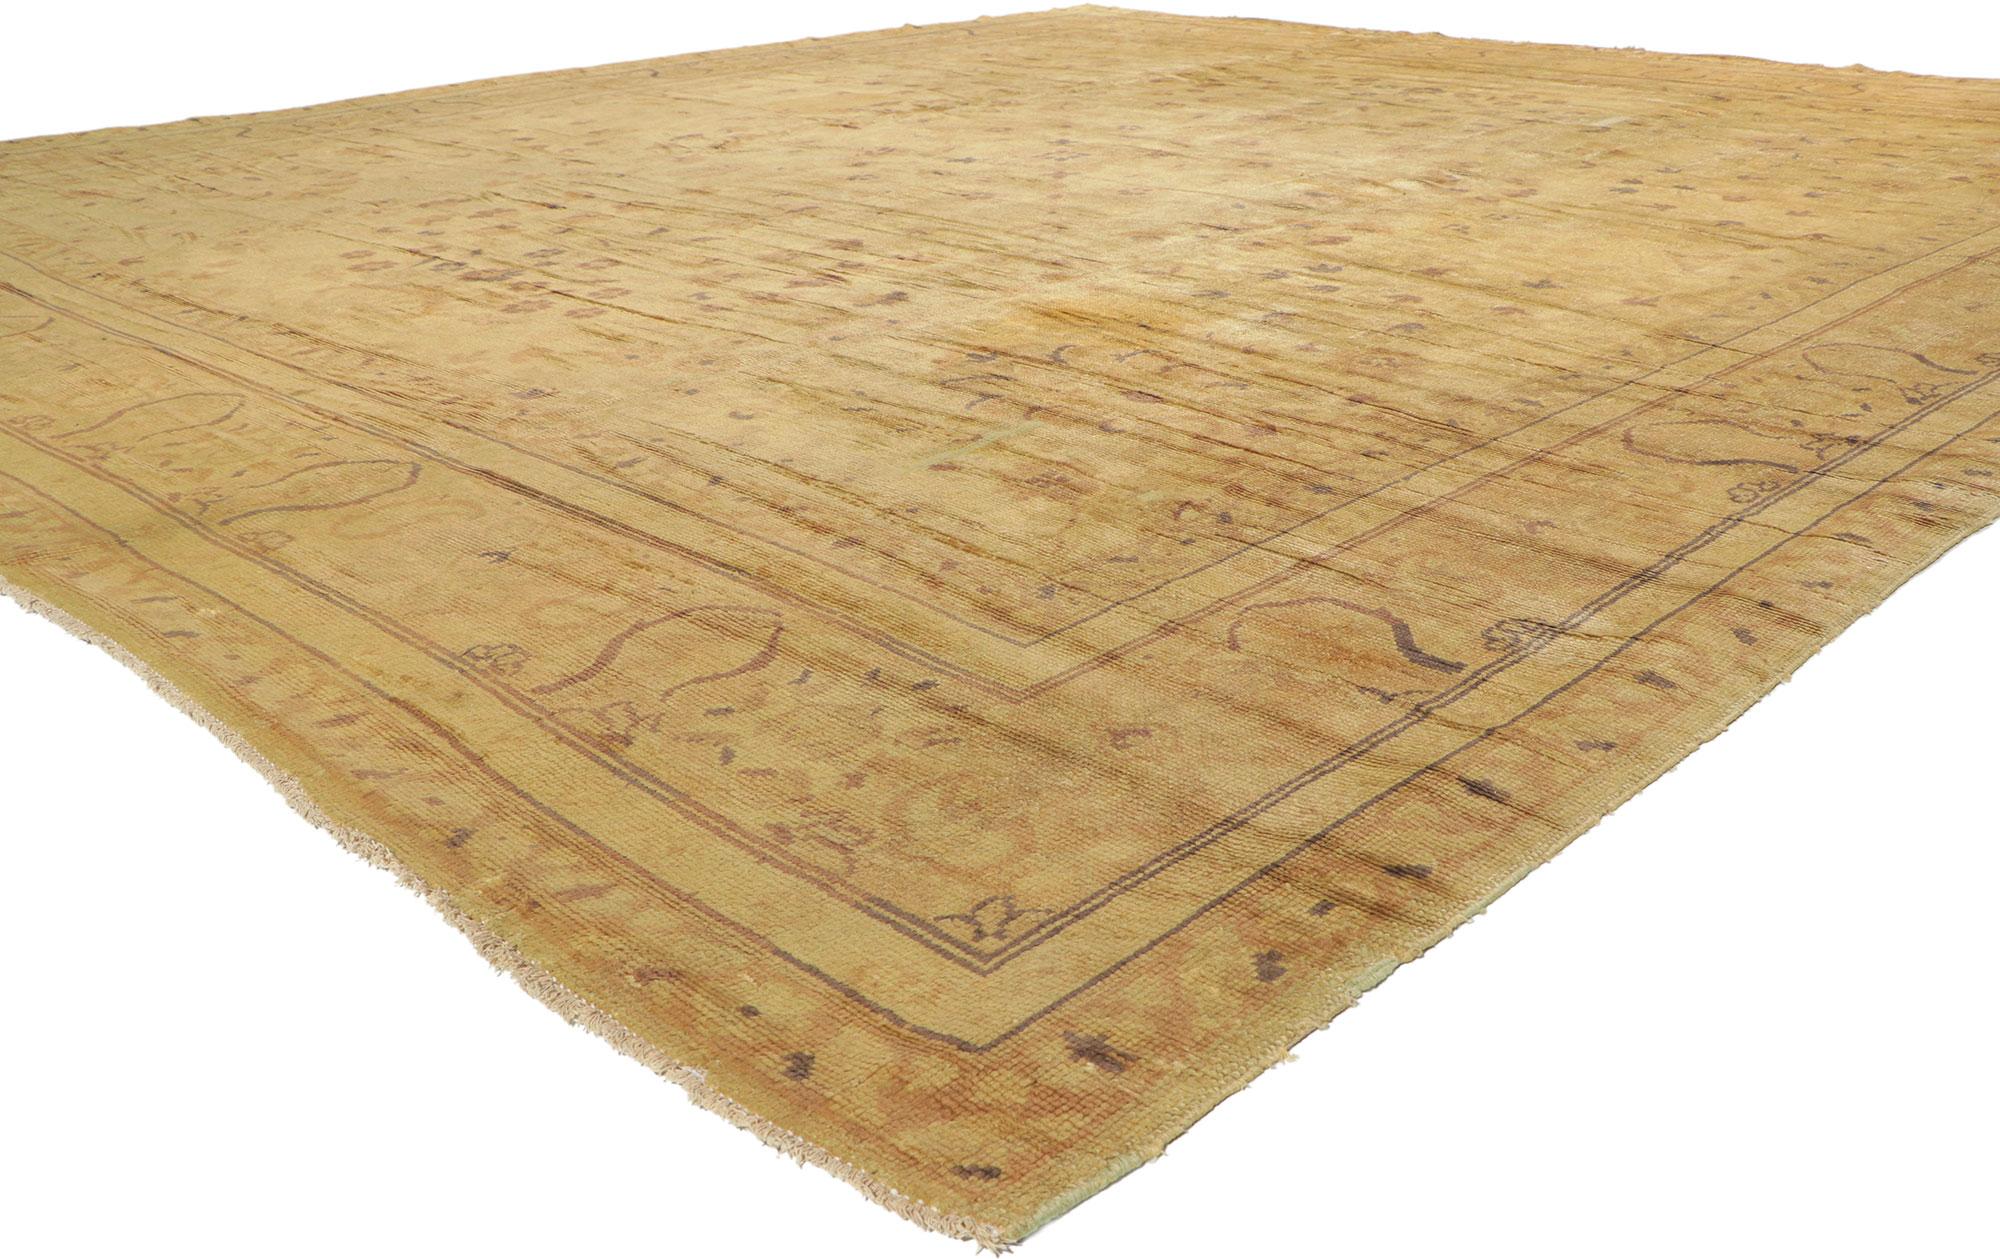 73348 Tapis français européen ancien, 12'04 x 13'09. Les tapis français européens sont des tapis de haute qualité fabriqués en France, connus pour leur artisanat exquis, leurs matériaux luxueux et leurs motifs complexes. Des régions comme Aubusson